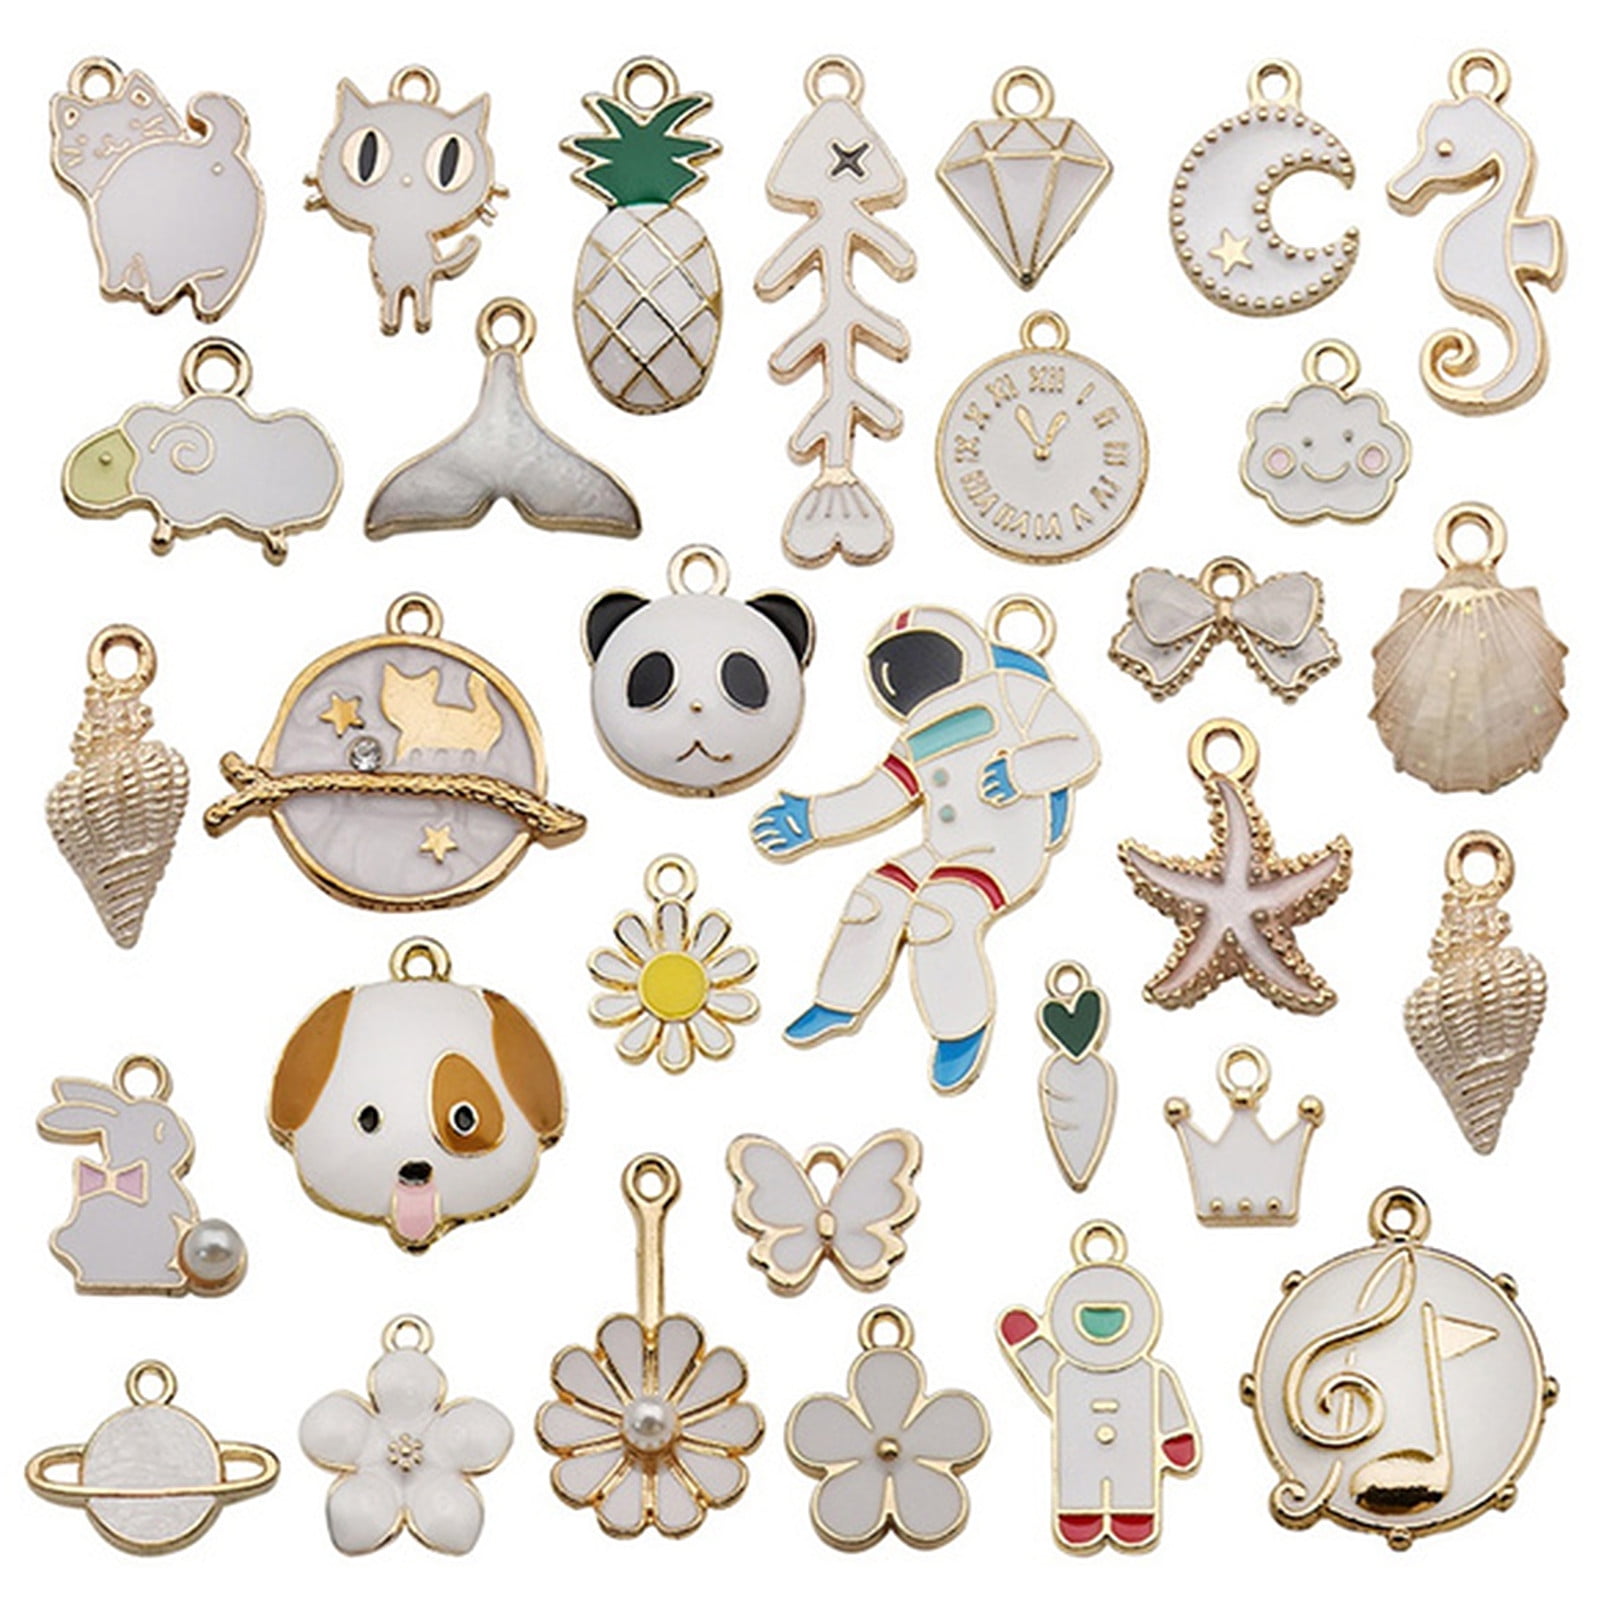 31/40pcs Mix Cute Enamel Charms Pendants for Jewellery Making Earrings  Bracelets